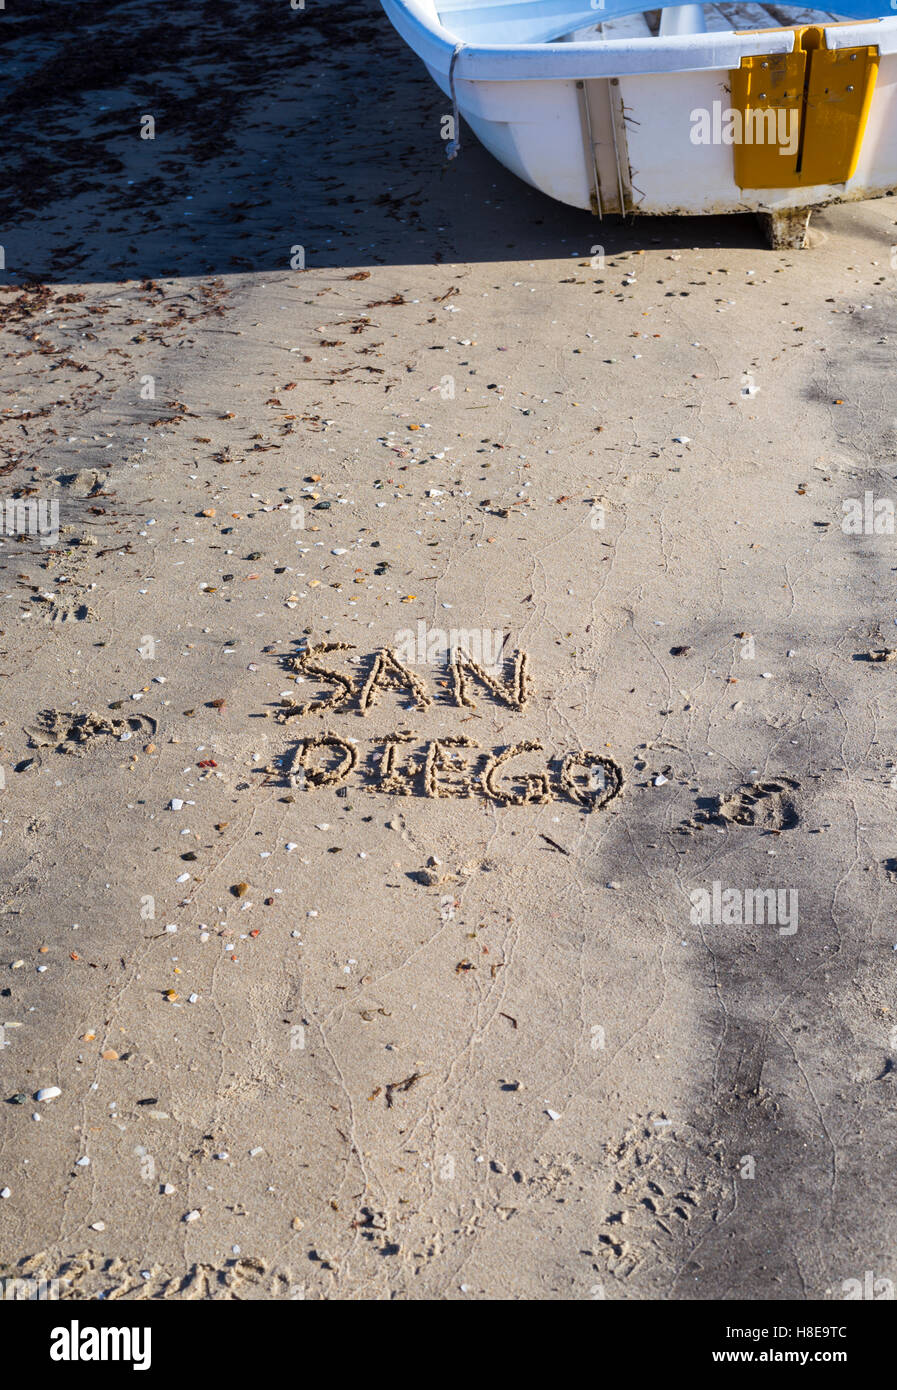 La palabra "Diego" escrito en la arena. San Diego, California, USA. Foto de stock